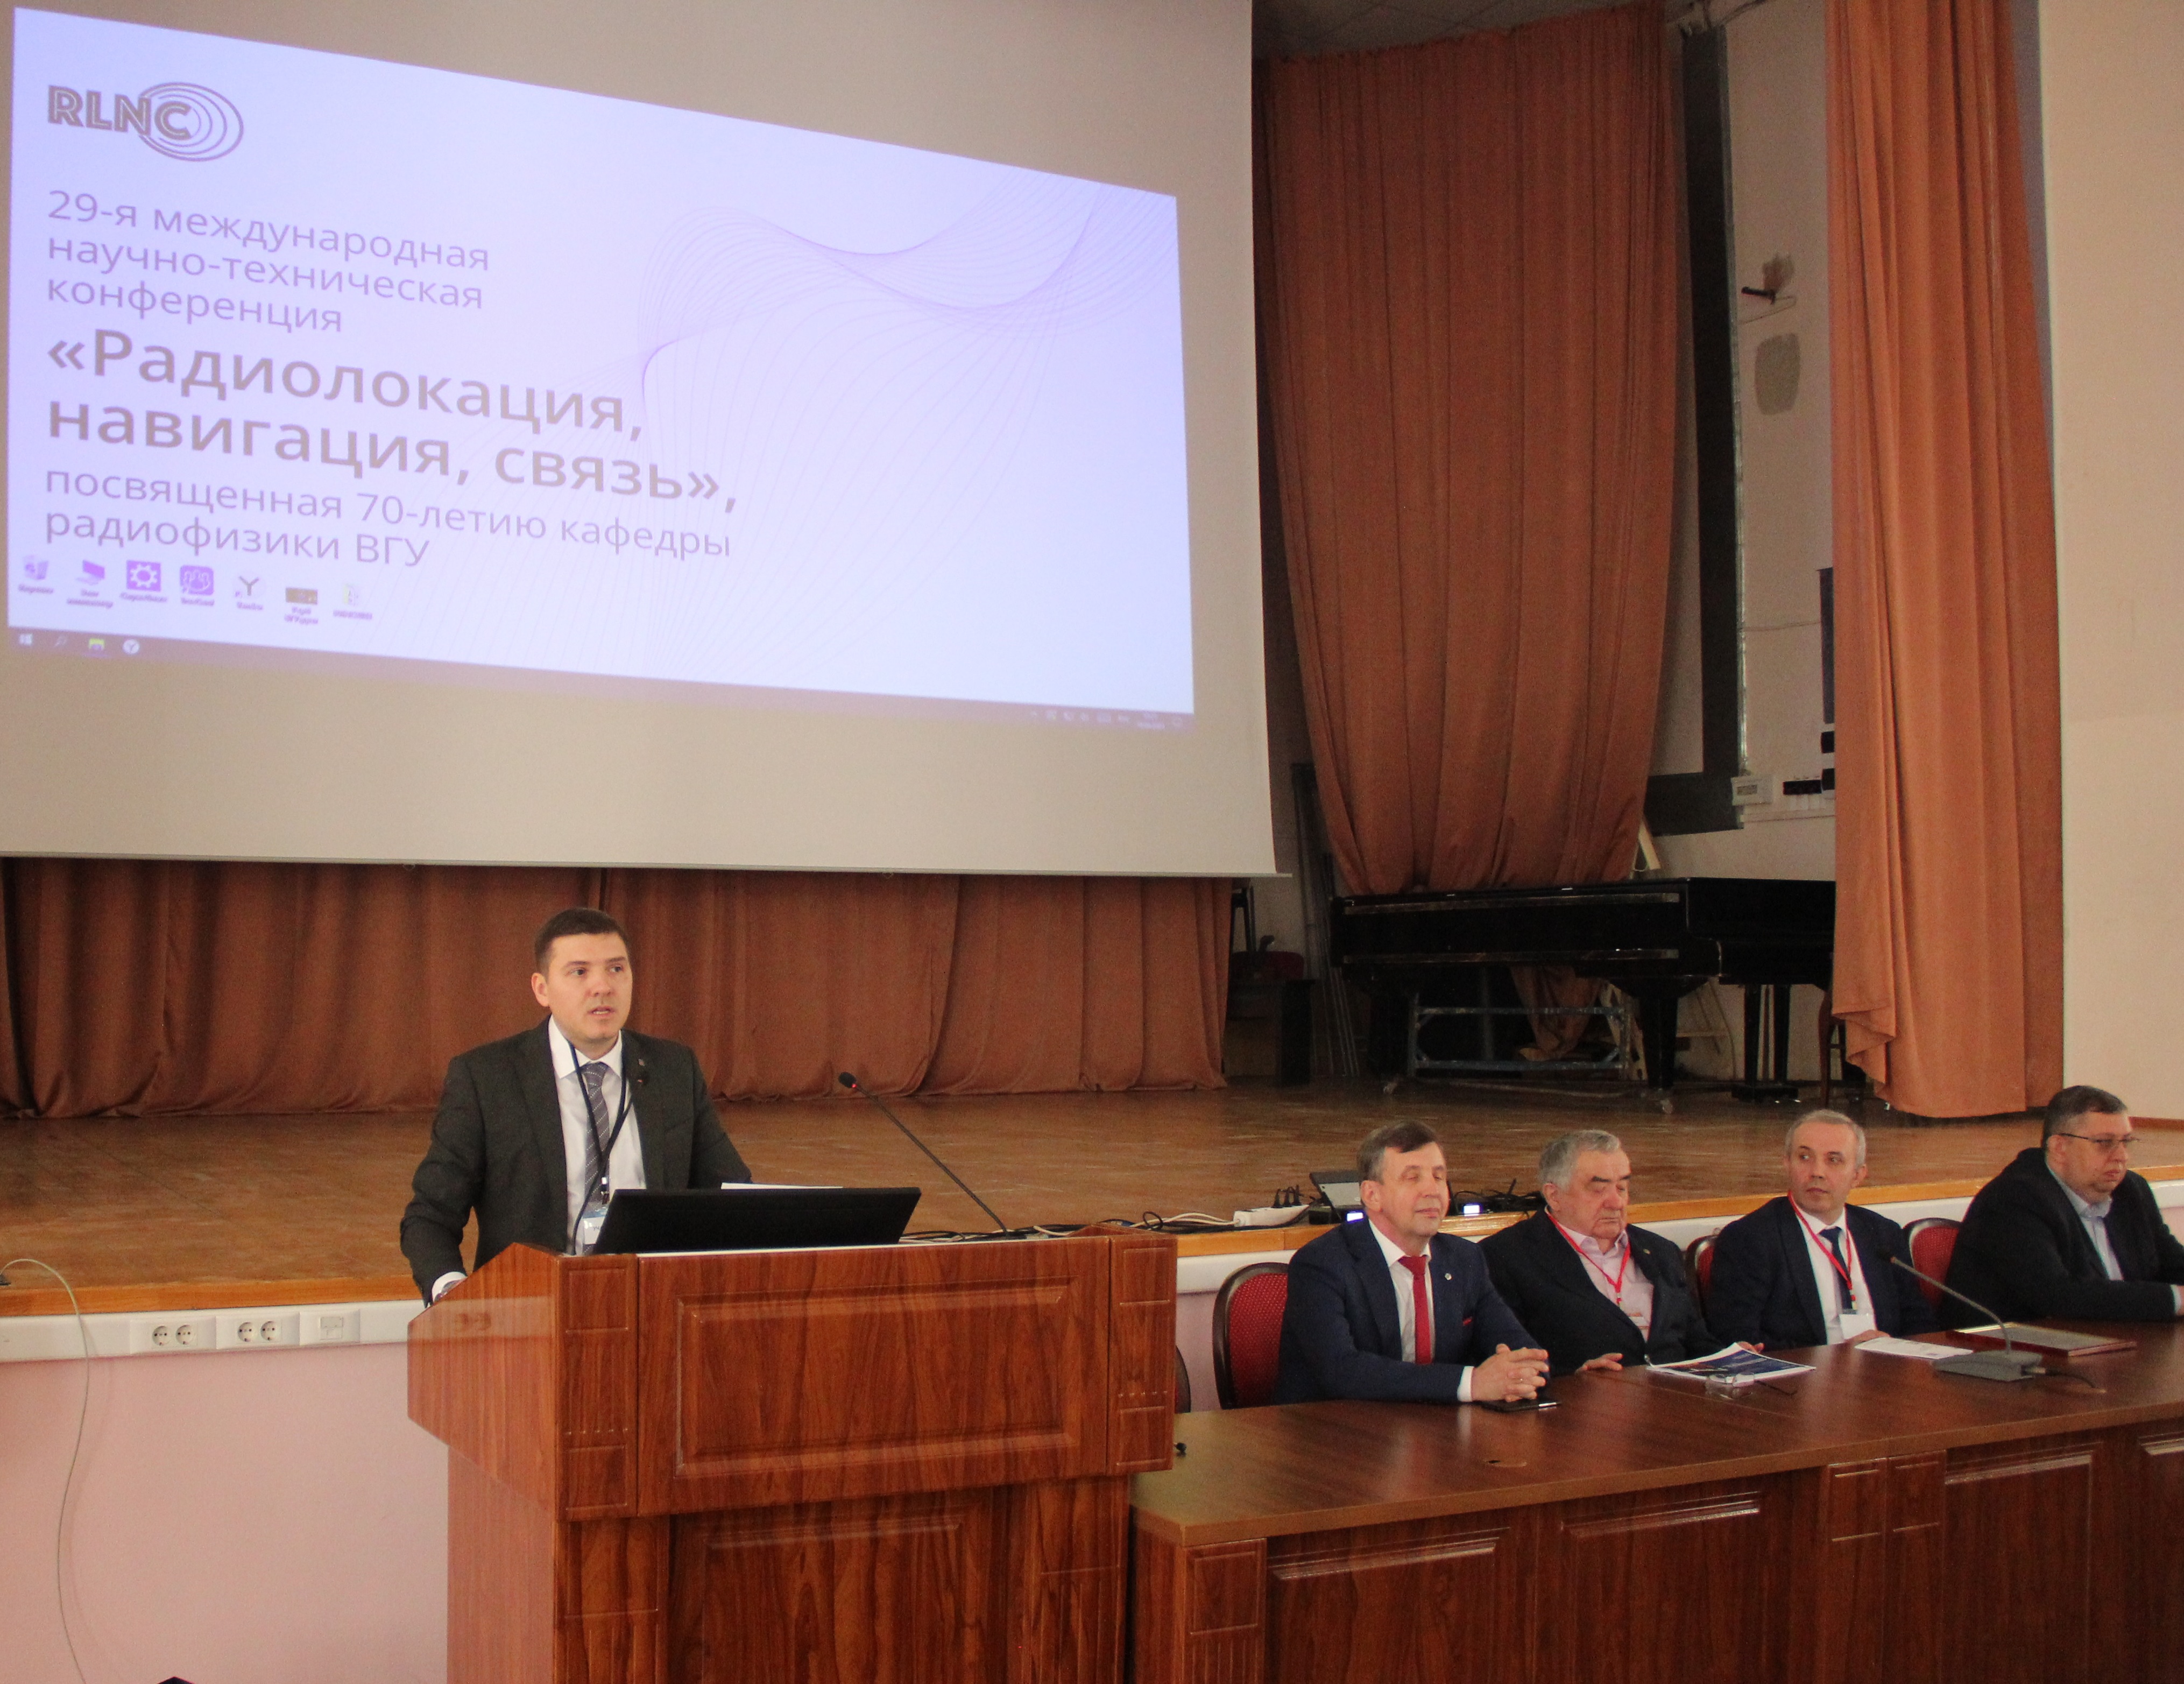 Новикомбанк принял участие в конференции «Радиолокация, навигация, связь»